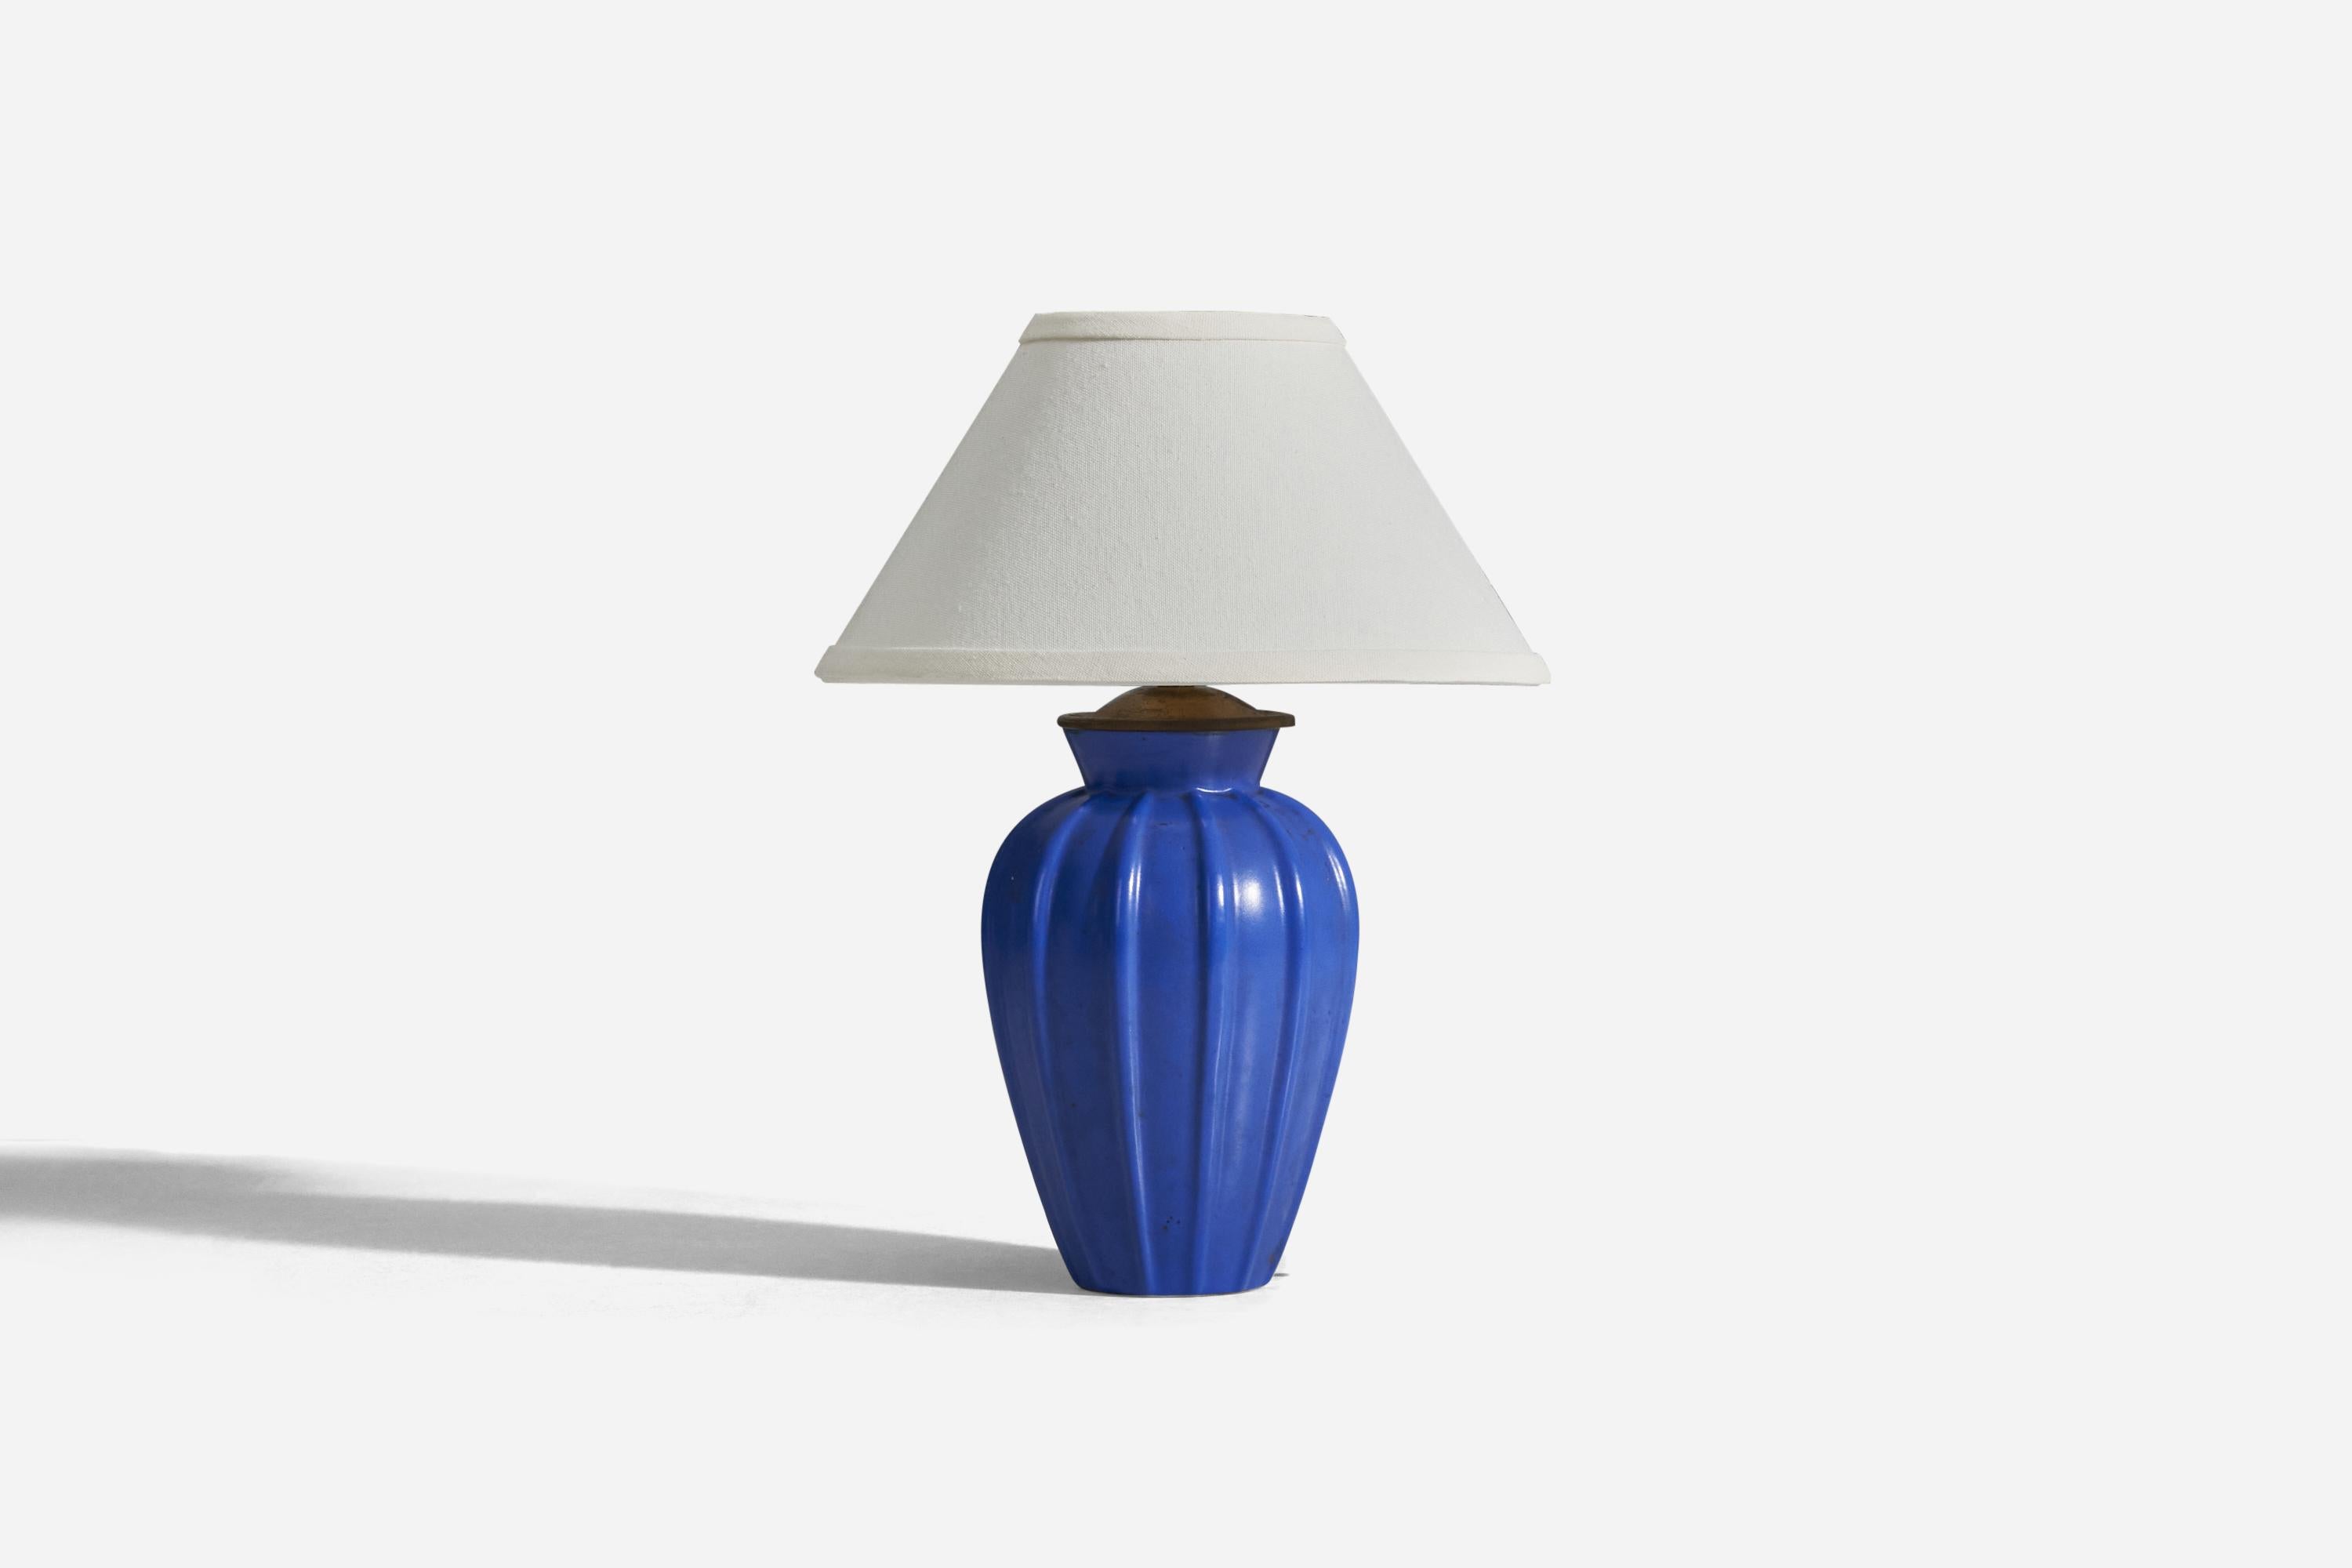 Lampe de table en faïence émaillée bleue et laiton, conçue et produite par Upsala-Ekeby, Suède, années 1940.

Vendu sans abat-jour
Dimensions de la lampe (pouces) : 11.18 x 5.56 x 5.56 (Hauteur x Largeur x Profondeur)
Dimensions de l'abat-jour